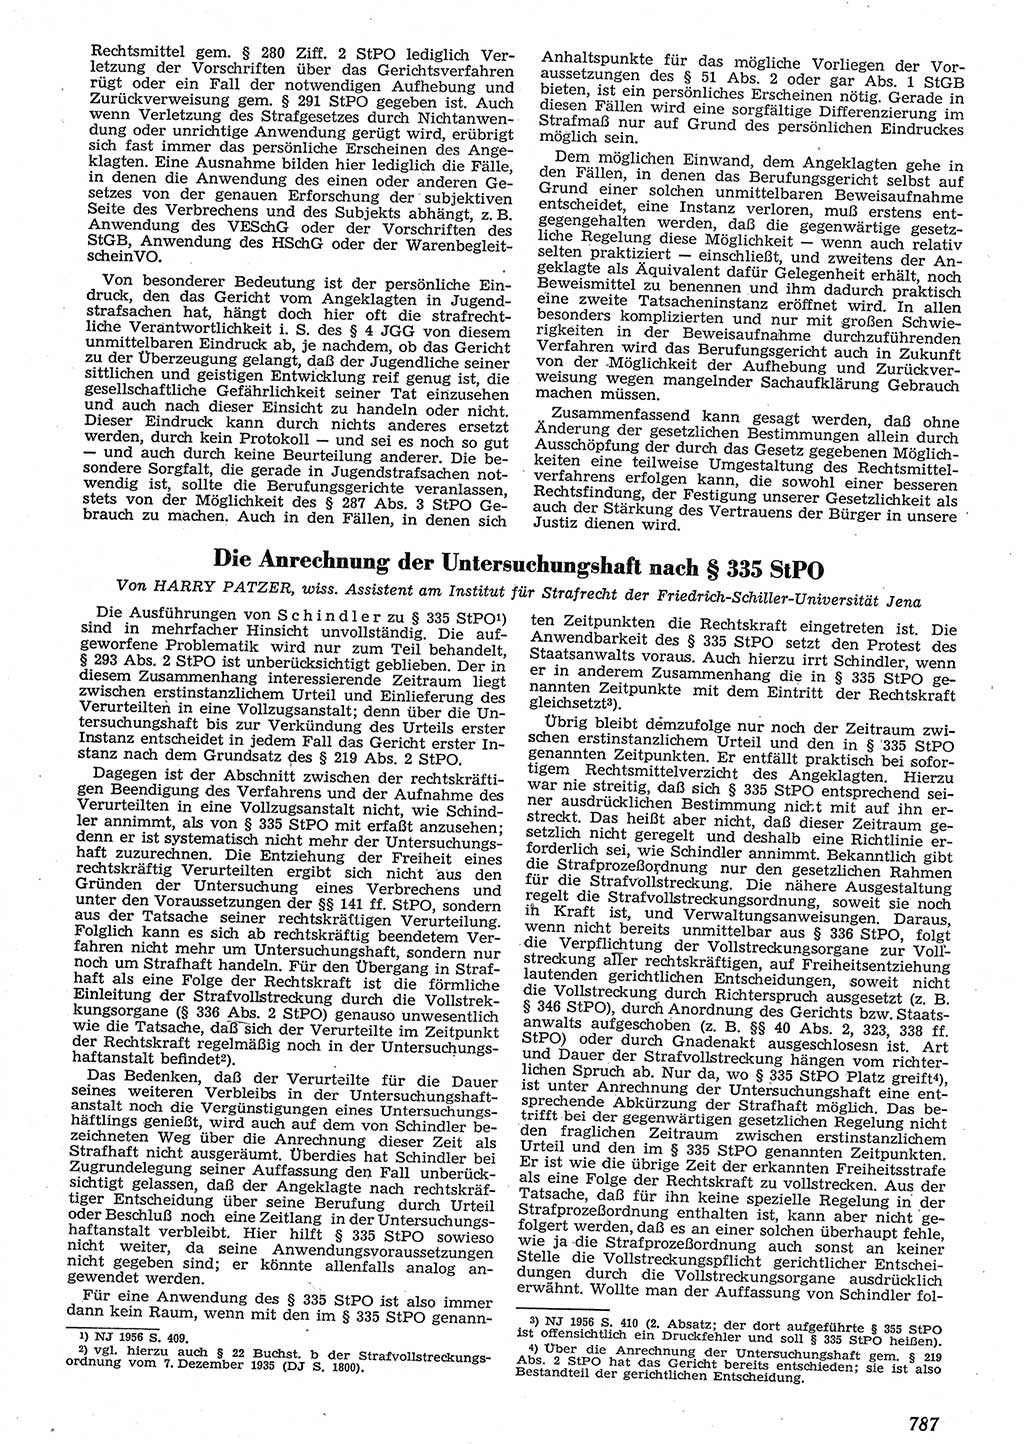 Neue Justiz (NJ), Zeitschrift für Recht und Rechtswissenschaft [Deutsche Demokratische Republik (DDR)], 10. Jahrgang 1956, Seite 787 (NJ DDR 1956, S. 787)